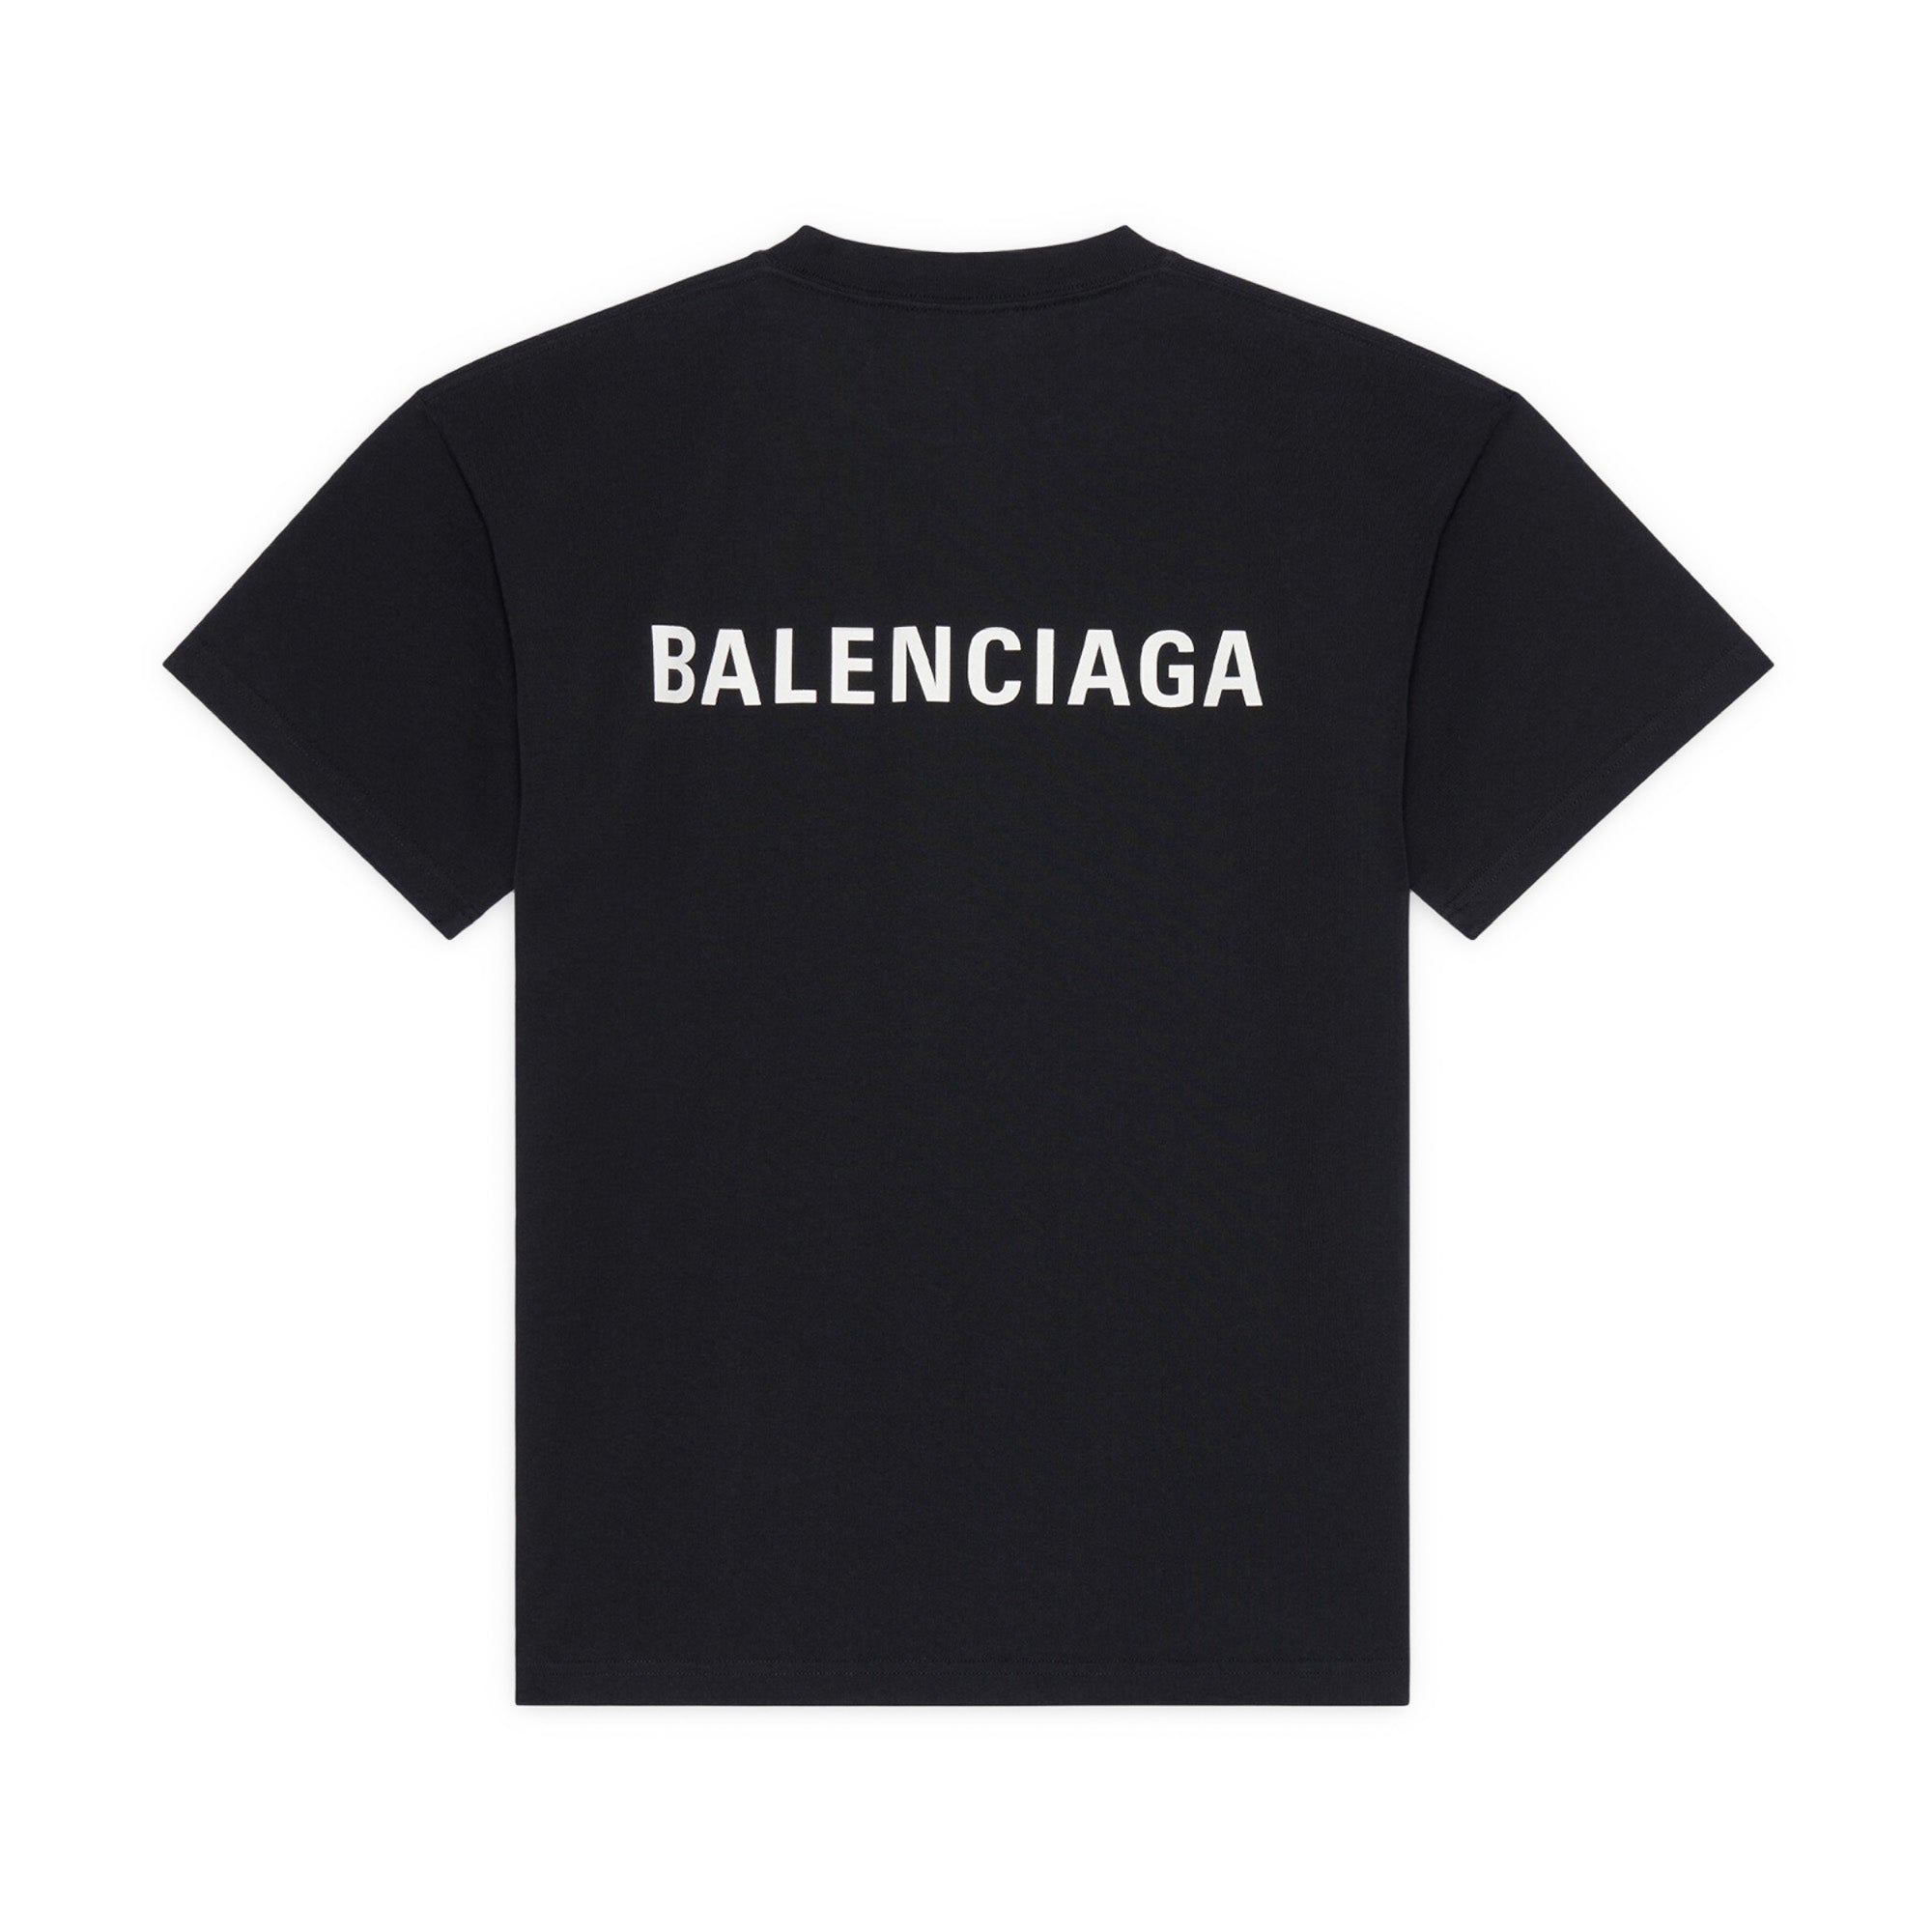 BALENCIAGA tshirt for women  Violet  Balenciaga tshirt 612964TKVJ1  online on GIGLIOCOM